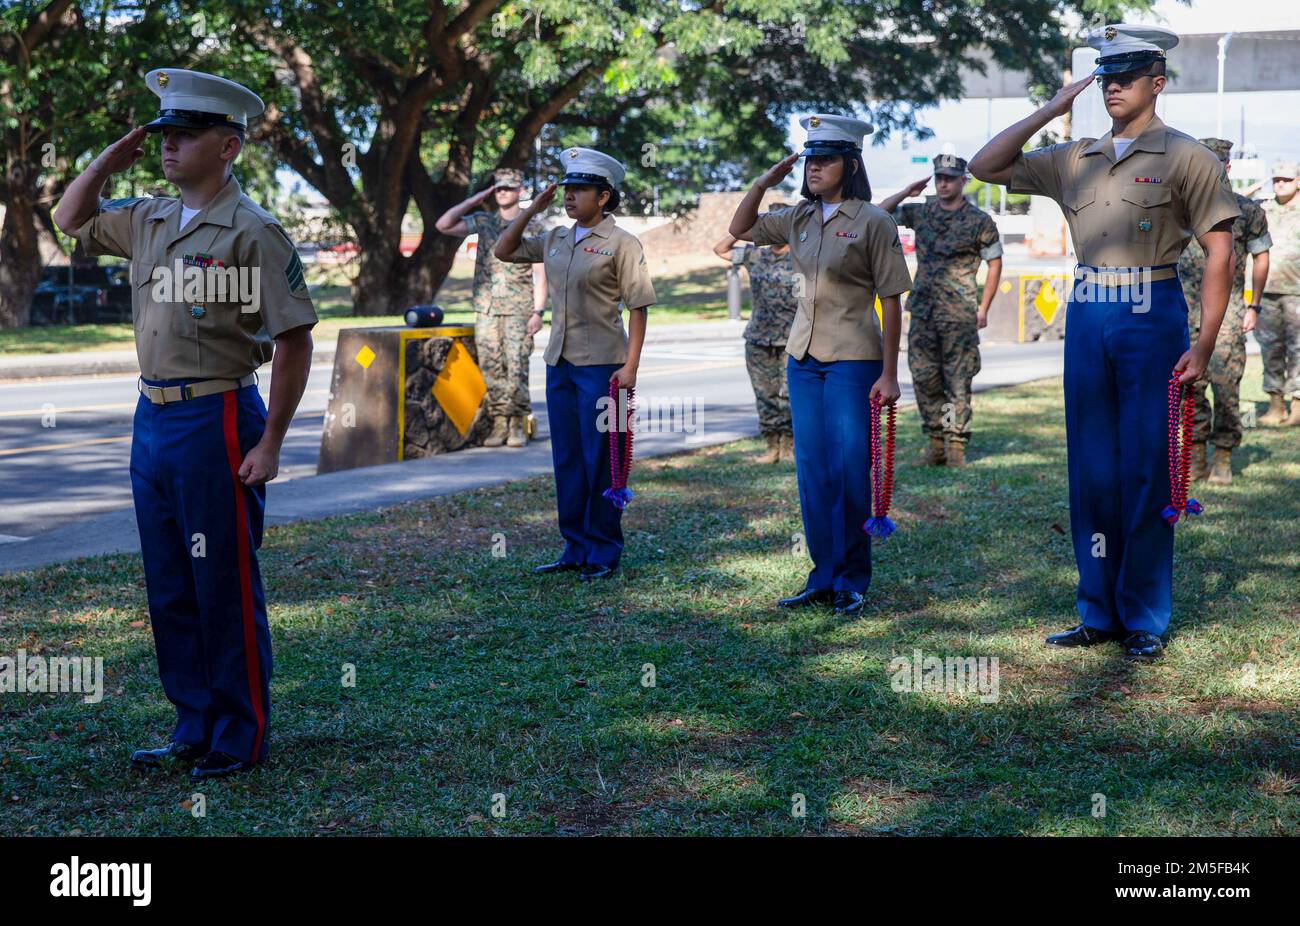 EE.UU Infantes de marina con los EE.UU. El Centro de Operaciones Conjuntas de Inteligencia del Comando Indo-Pacífico, Element del Cuerpo de Marines, permanece de pie para un momento de silencio durante una ceremonia de conmemoración en honor a Estados Unidos Jeffrey A. Borchers frente a Borchers Gate, Base Conjunta Pearl Harbor-Hickam, Hawái, 11 de marzo de 2022. Los miembros del servicio se reunieron para honrar y recordar el servicio de Borchers en los Estados Unidos Cuerpo de Marines. Borchers fue asesinado a tiros el 12 de marzo de 1990 mientras estaba de pie en lo que entonces se llamaba Post 19. Foto de stock